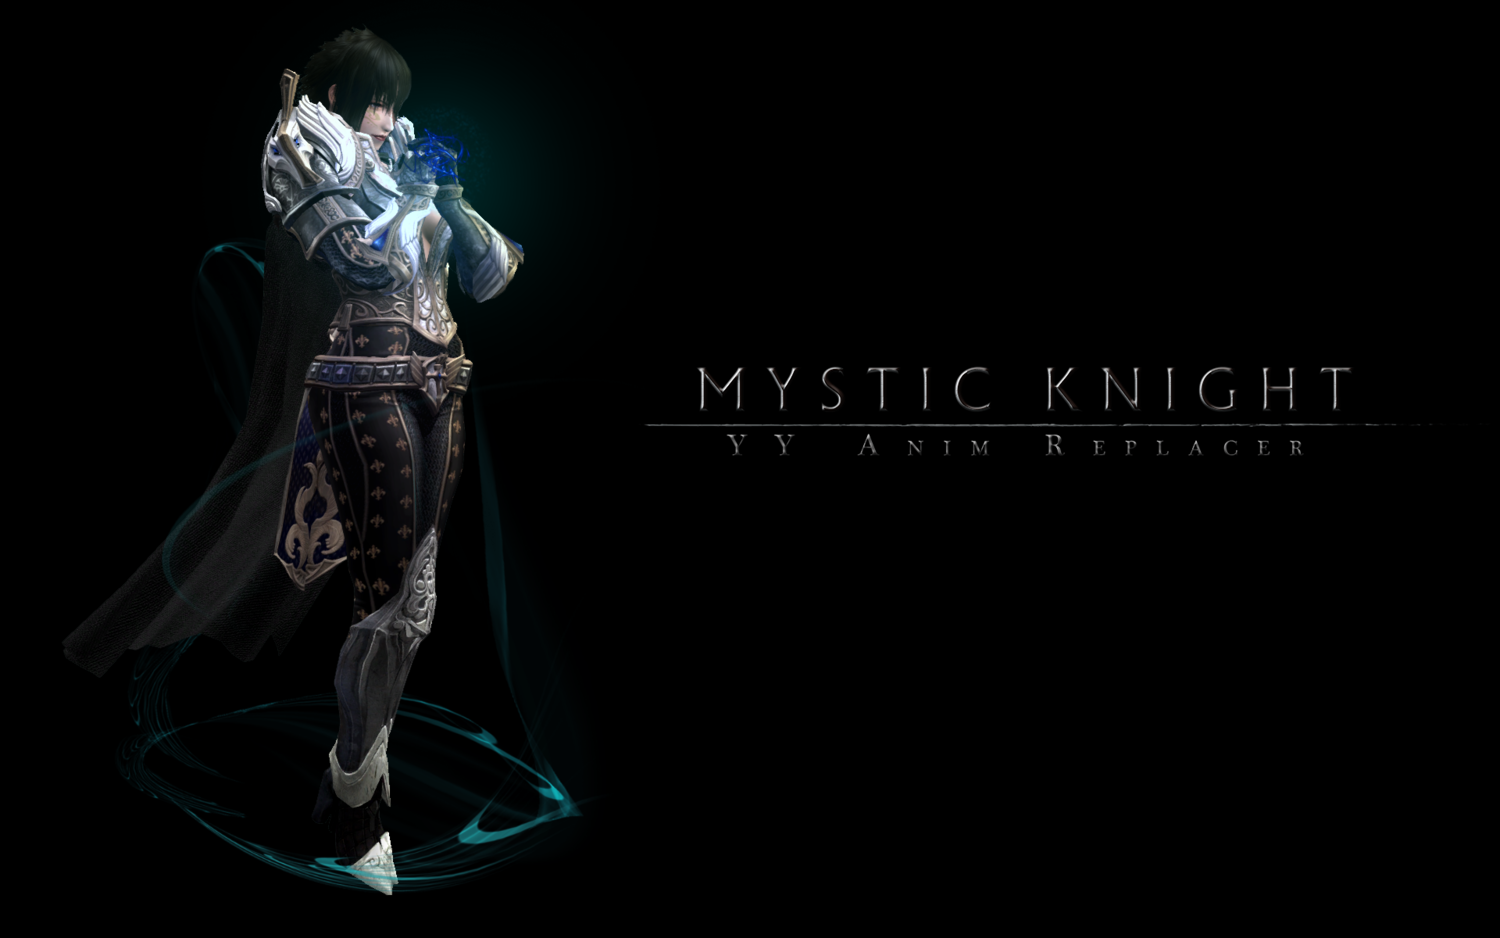 Мистический рыцарь - реплейсер анимации 1.1.0/YY Anim Replacer - Mystic Knight